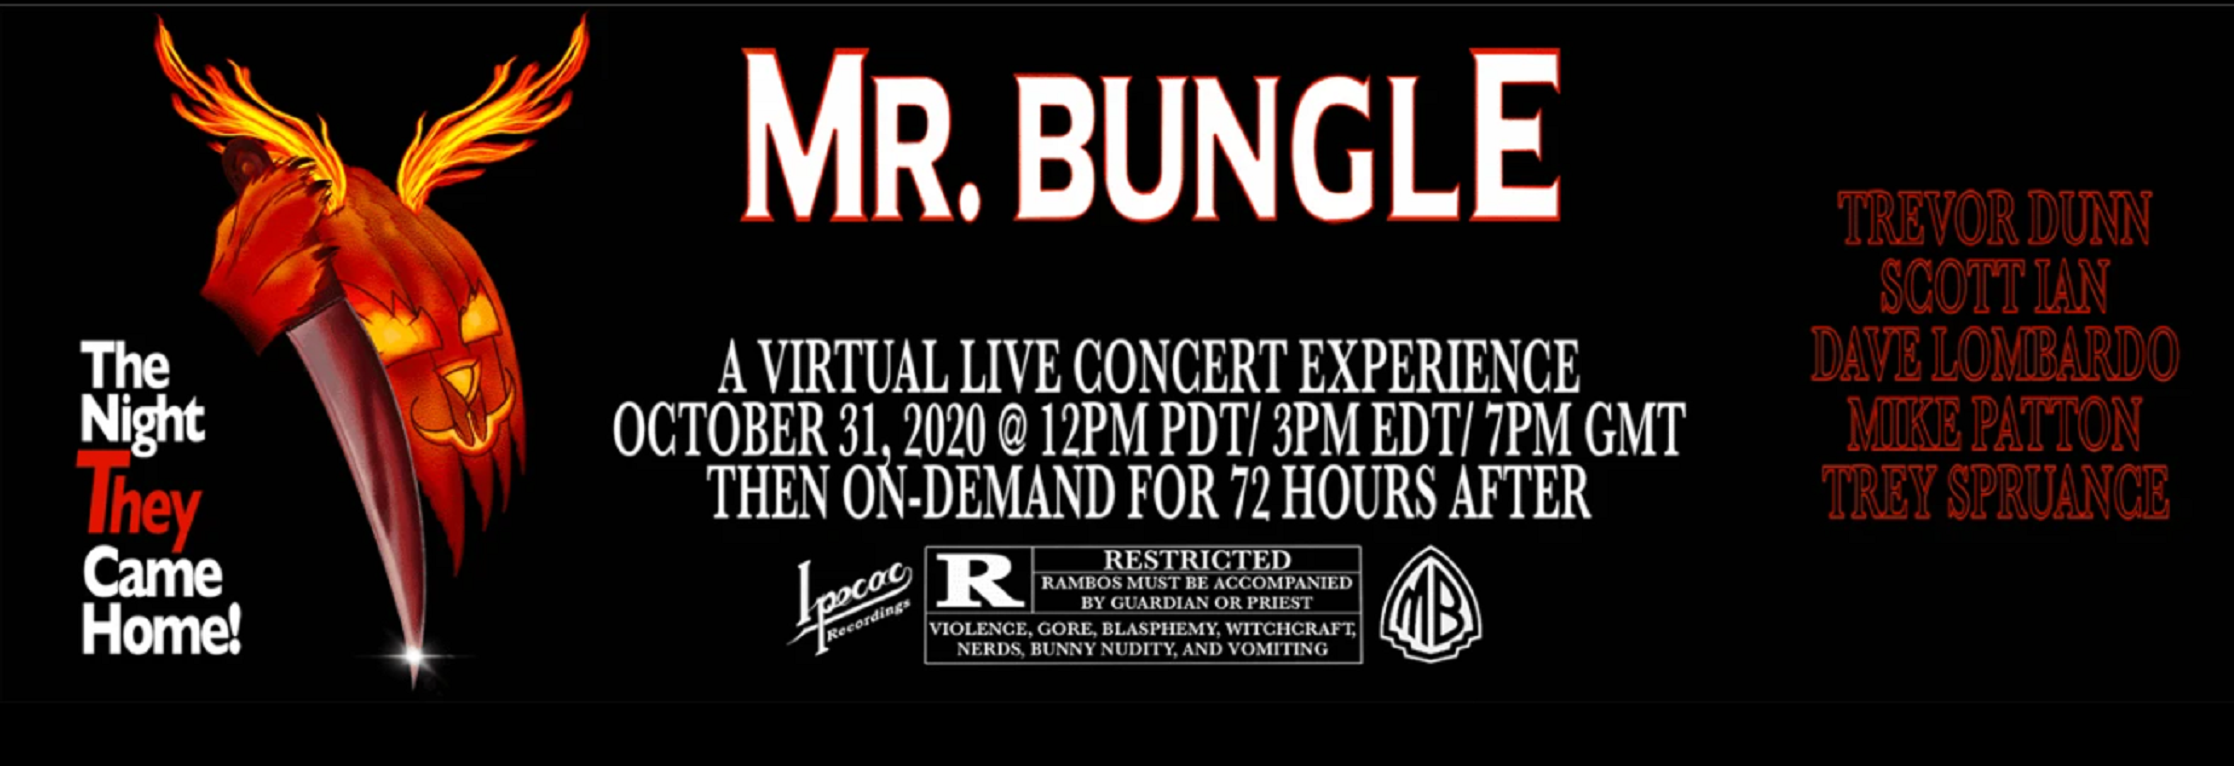 Mr Bungle_poster